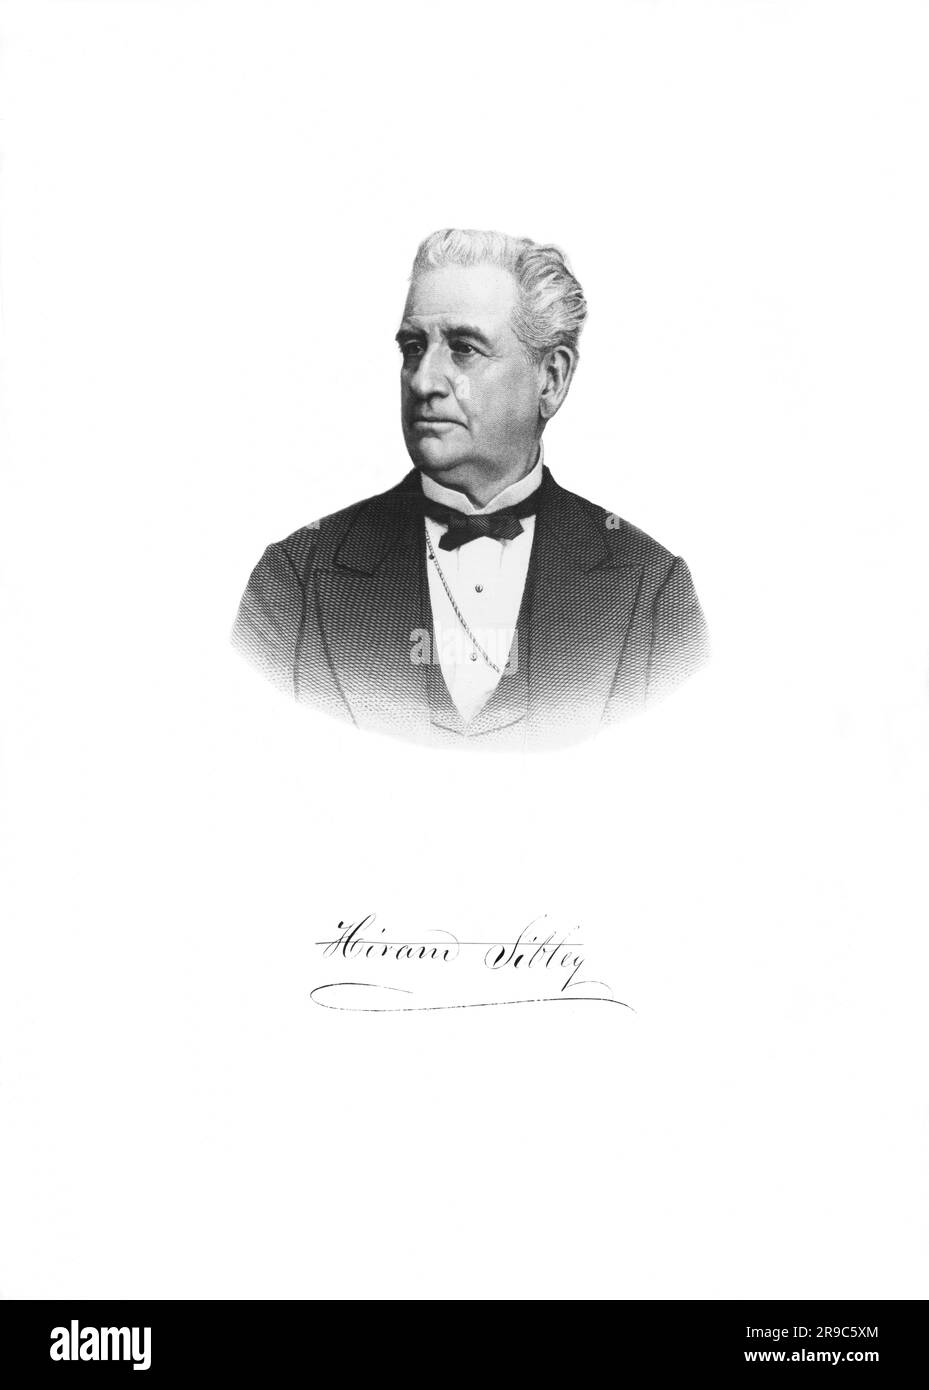 Vereinigte Staaten: c. 1880 Portrait von Hiram Sibley, Industrielle und Unternehmer. Er arbeitete eng mit Samuel Morse zusammen und war der erste Präsident der Western Union Telegraph Company. Stockfoto